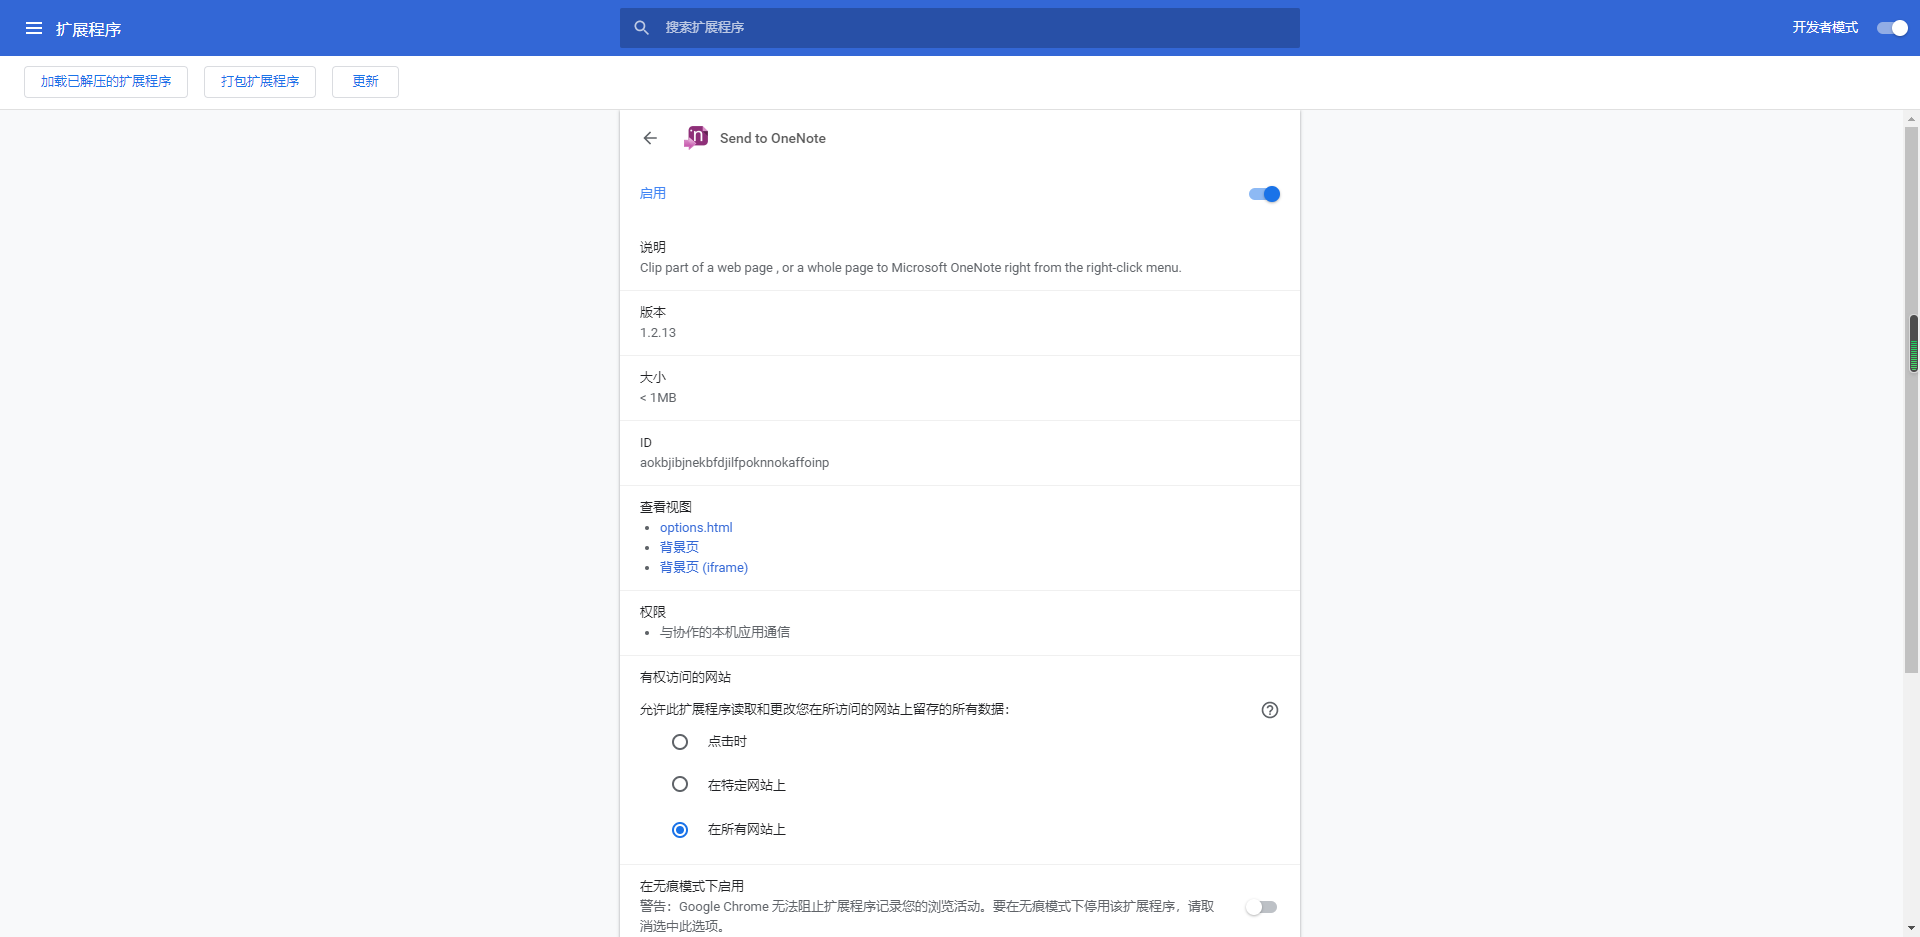 Send to OneNote谷歌插件 v1.2.13 官方版0